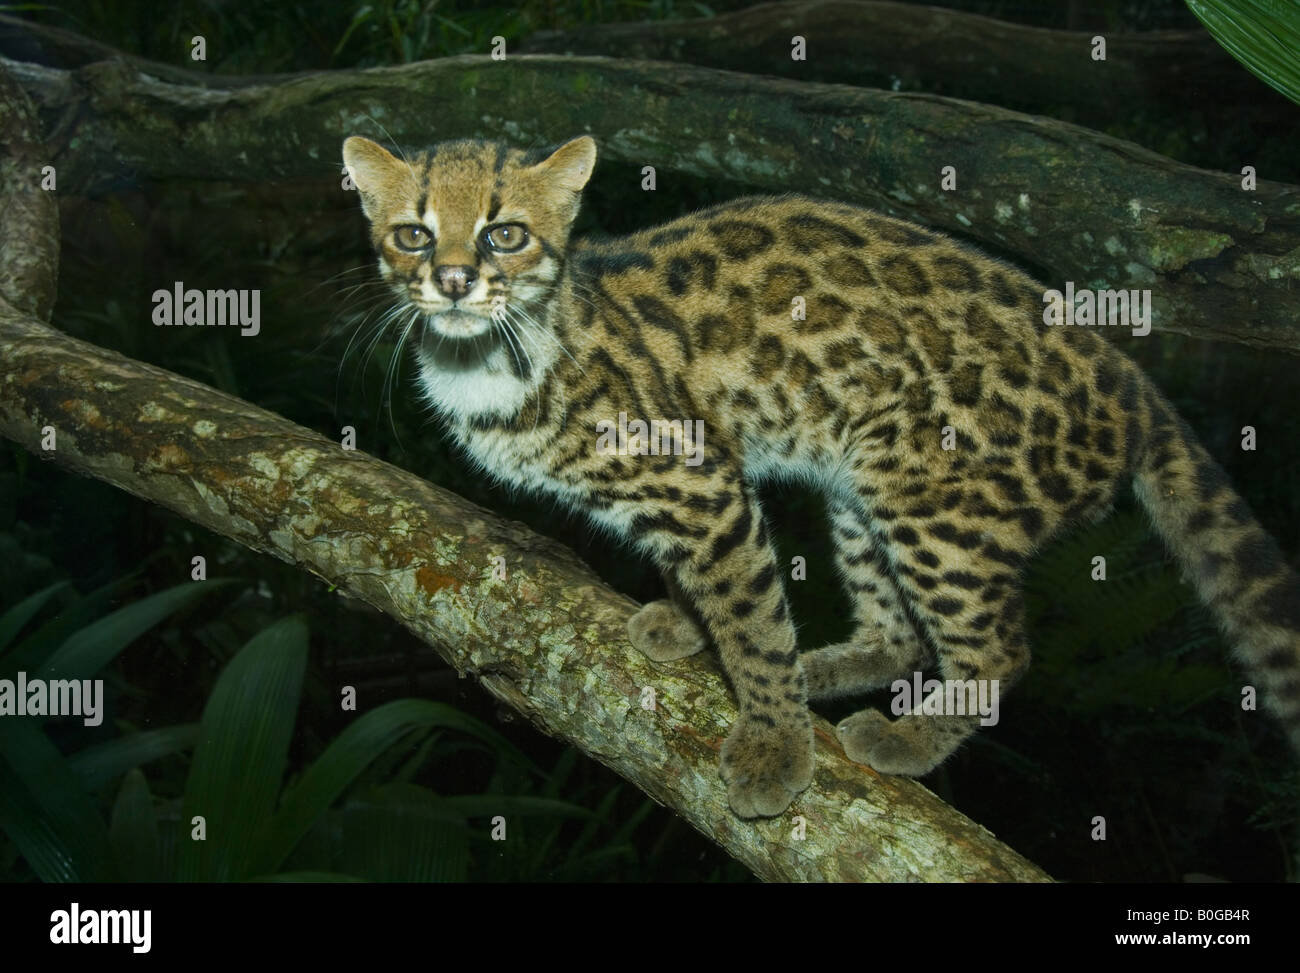 Oncilla (Leopardus tigrinus) également connu sous le nom de chat-tigre ou peu félin tacheté, le COSTA RICA, captive Banque D'Images